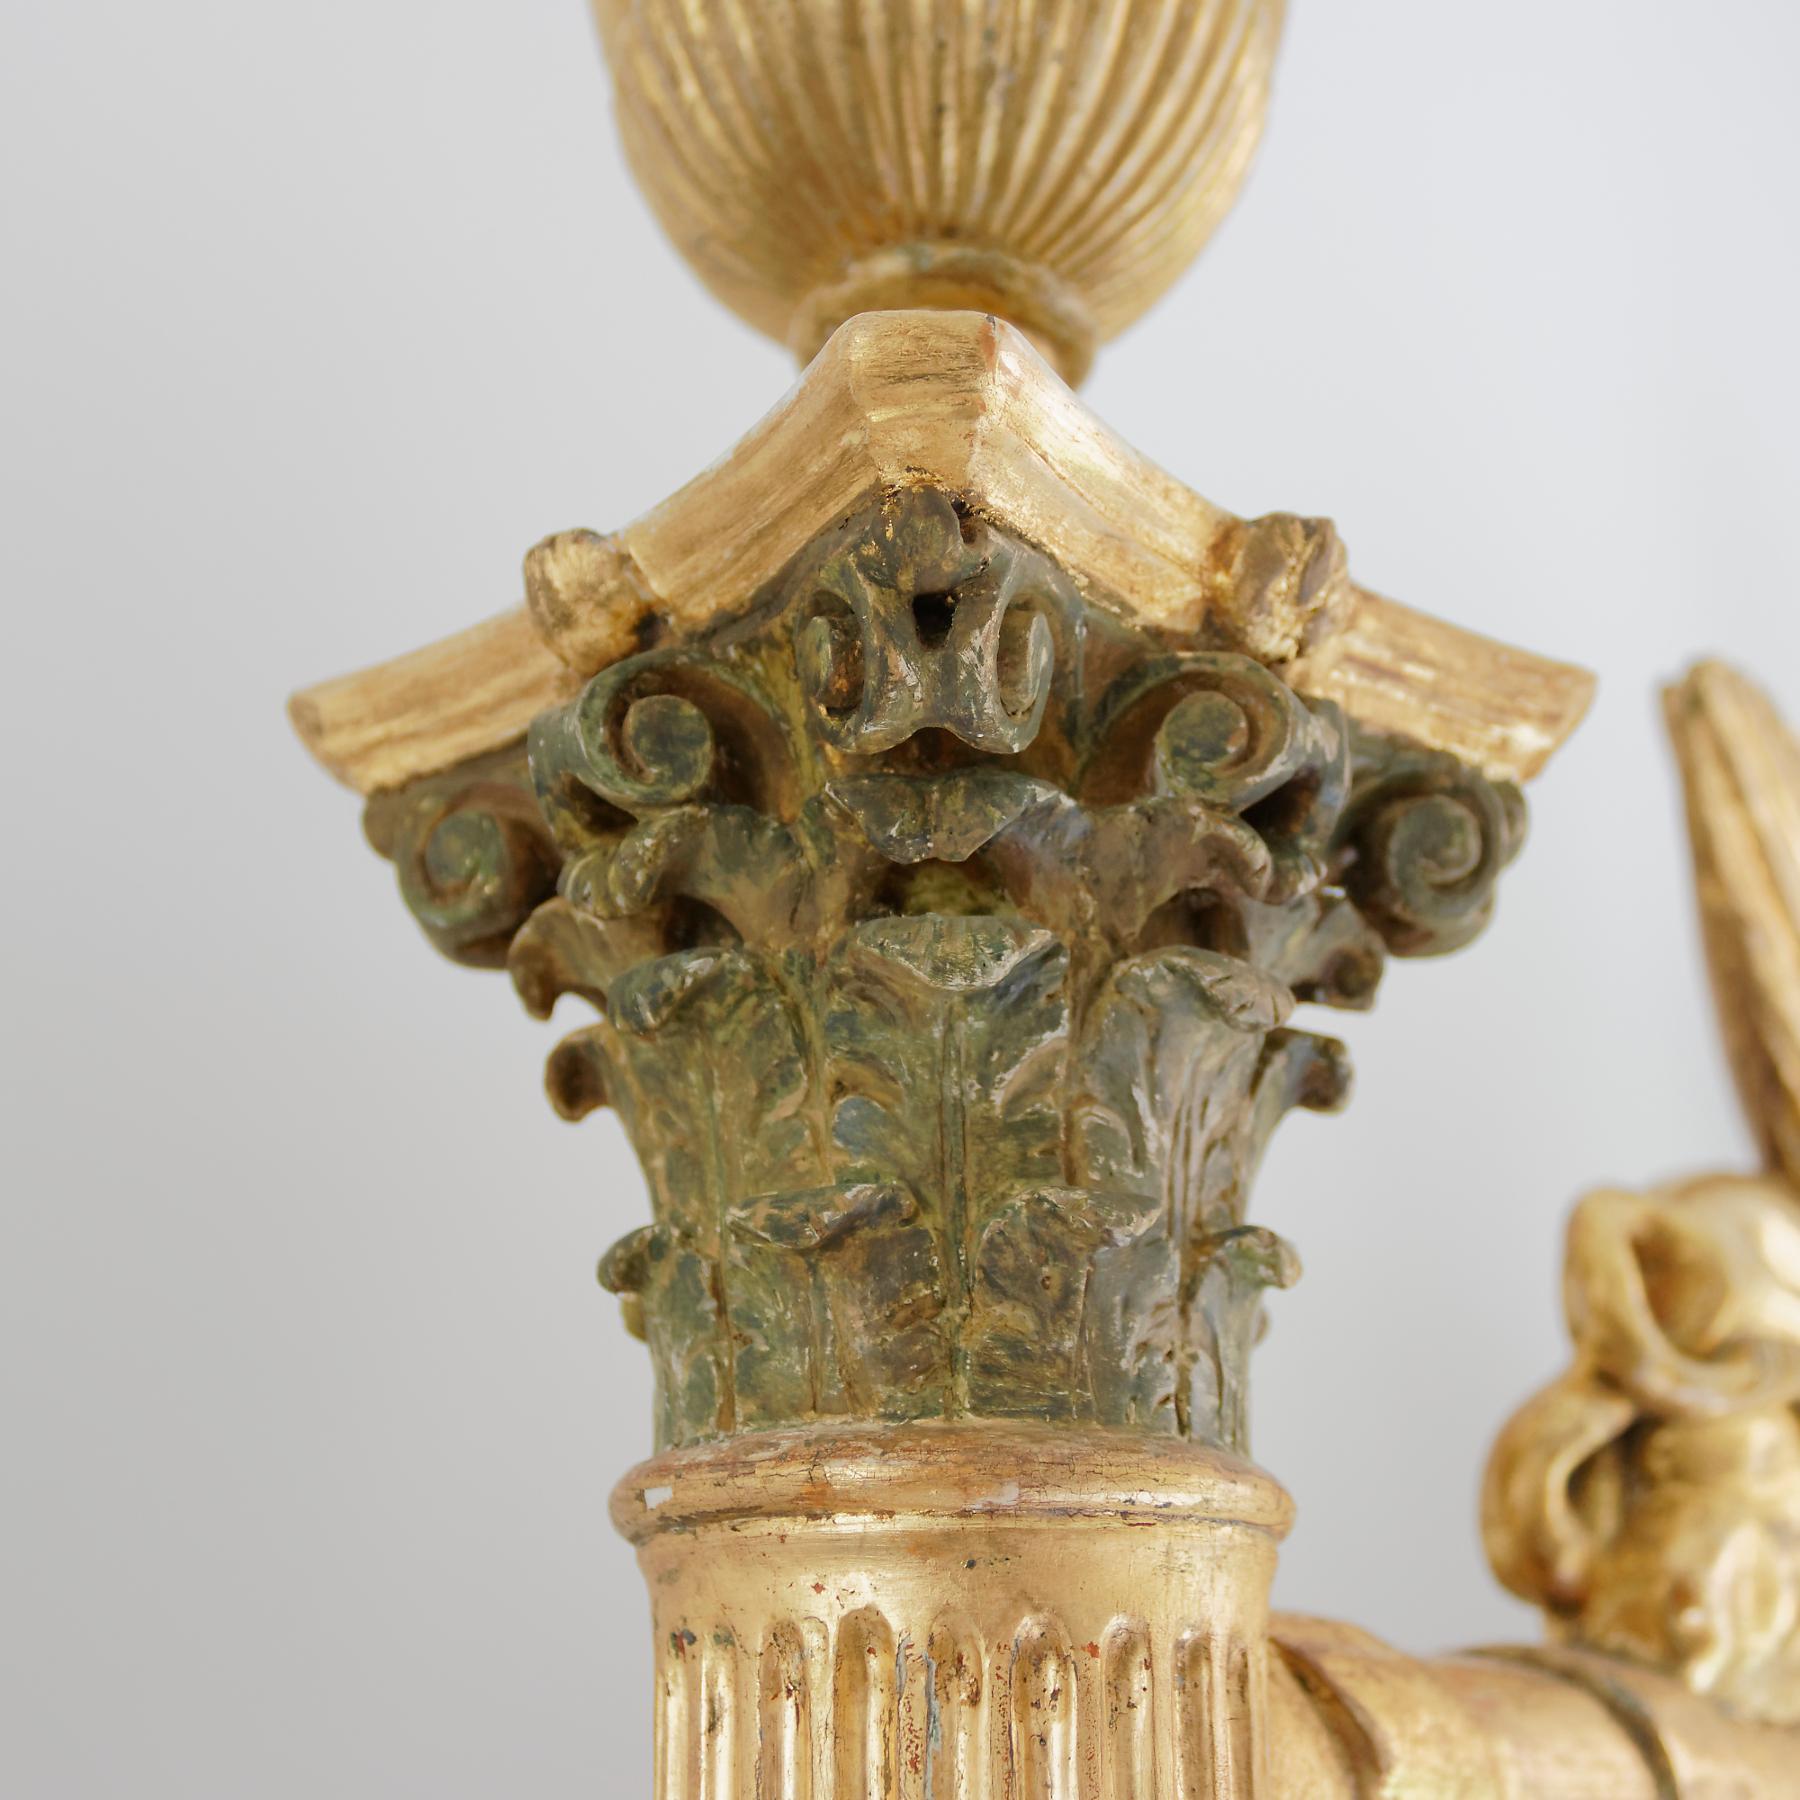 Ein ungewöhnlicher und faszinierender vergoldeter Spiegel aus dem Baltischen Empire im ägyptischen Geschmack. Das Design und die reiche Ornamentik dieses Spiegels spiegeln die Faszination für das ägyptische Altertum wider, die durch die